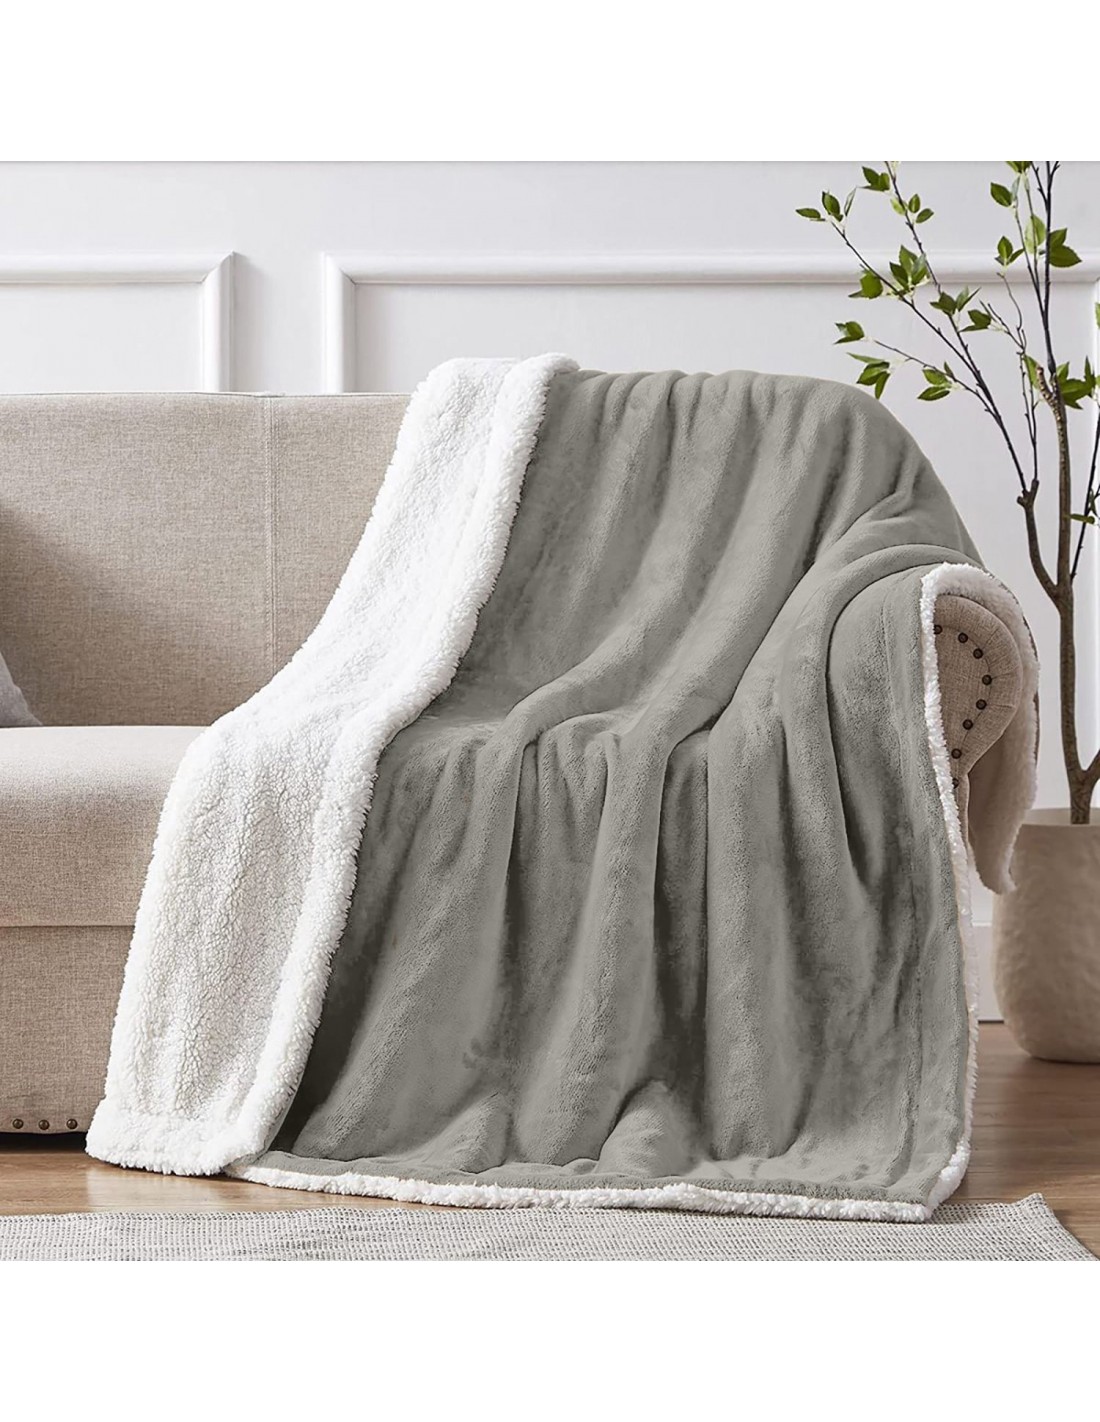 Geweldige eik Maak leven tiener Grote deken, zachte fleece, 180x240 CM-DOLCE